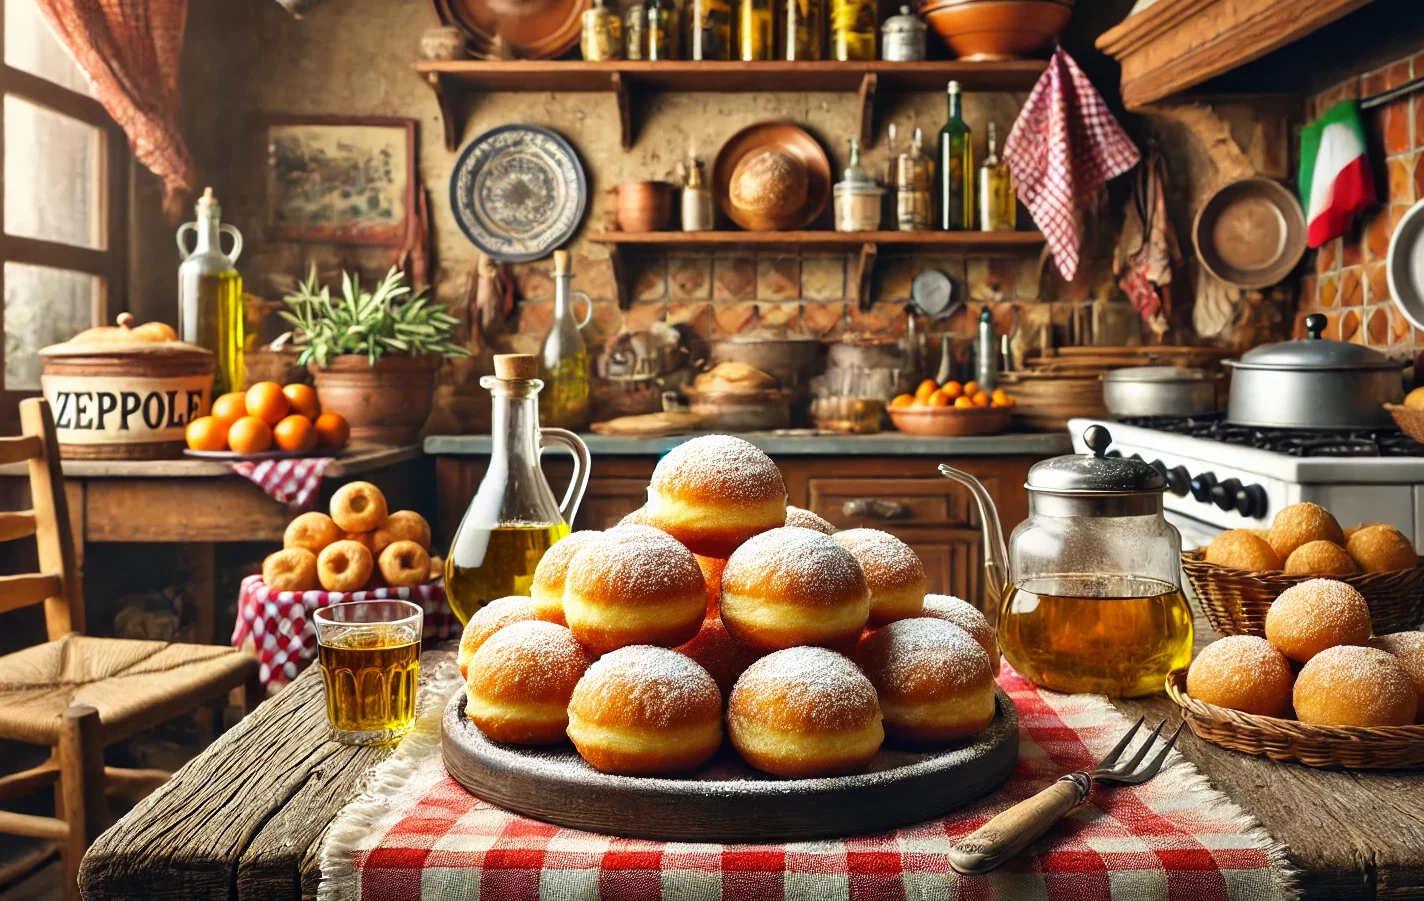 Ricotta en Citroen Zeppole: Italiaanse Donuts met een Frisse Twist